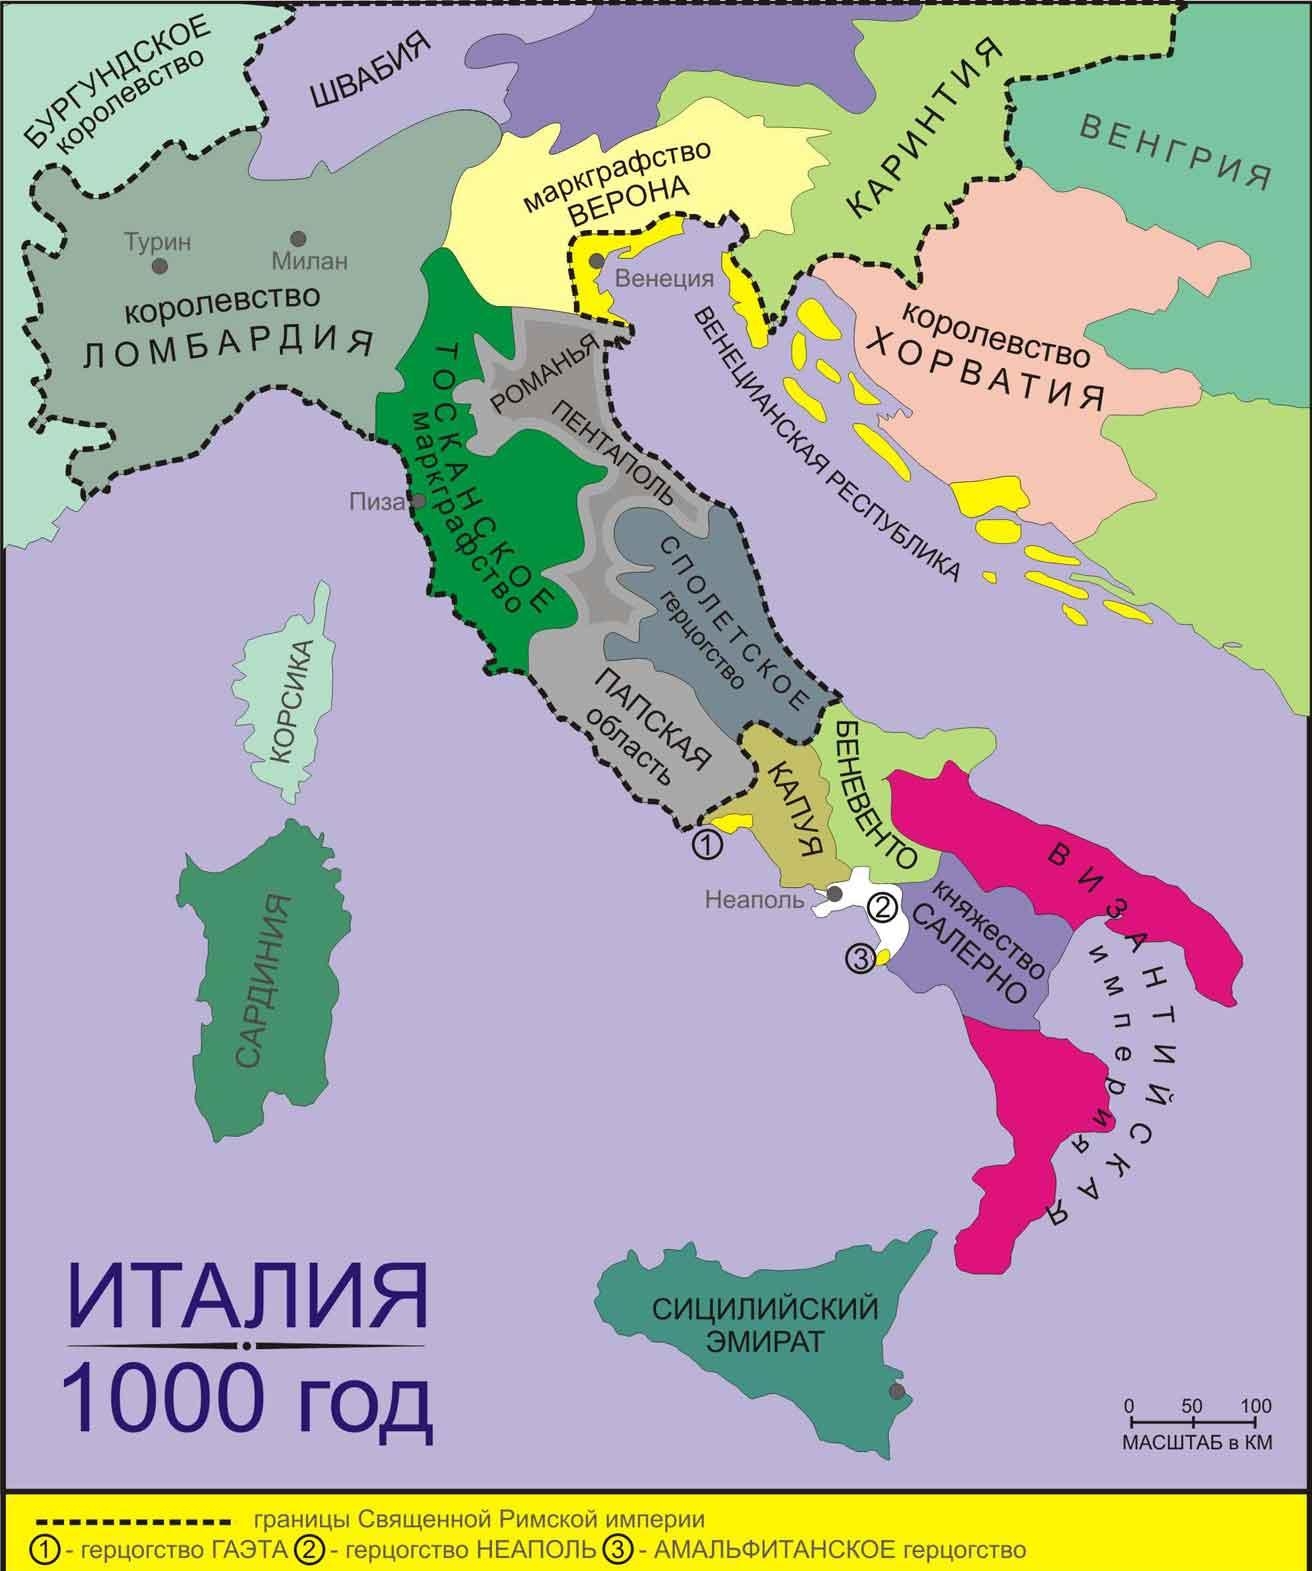 14. Италия в 1000 году